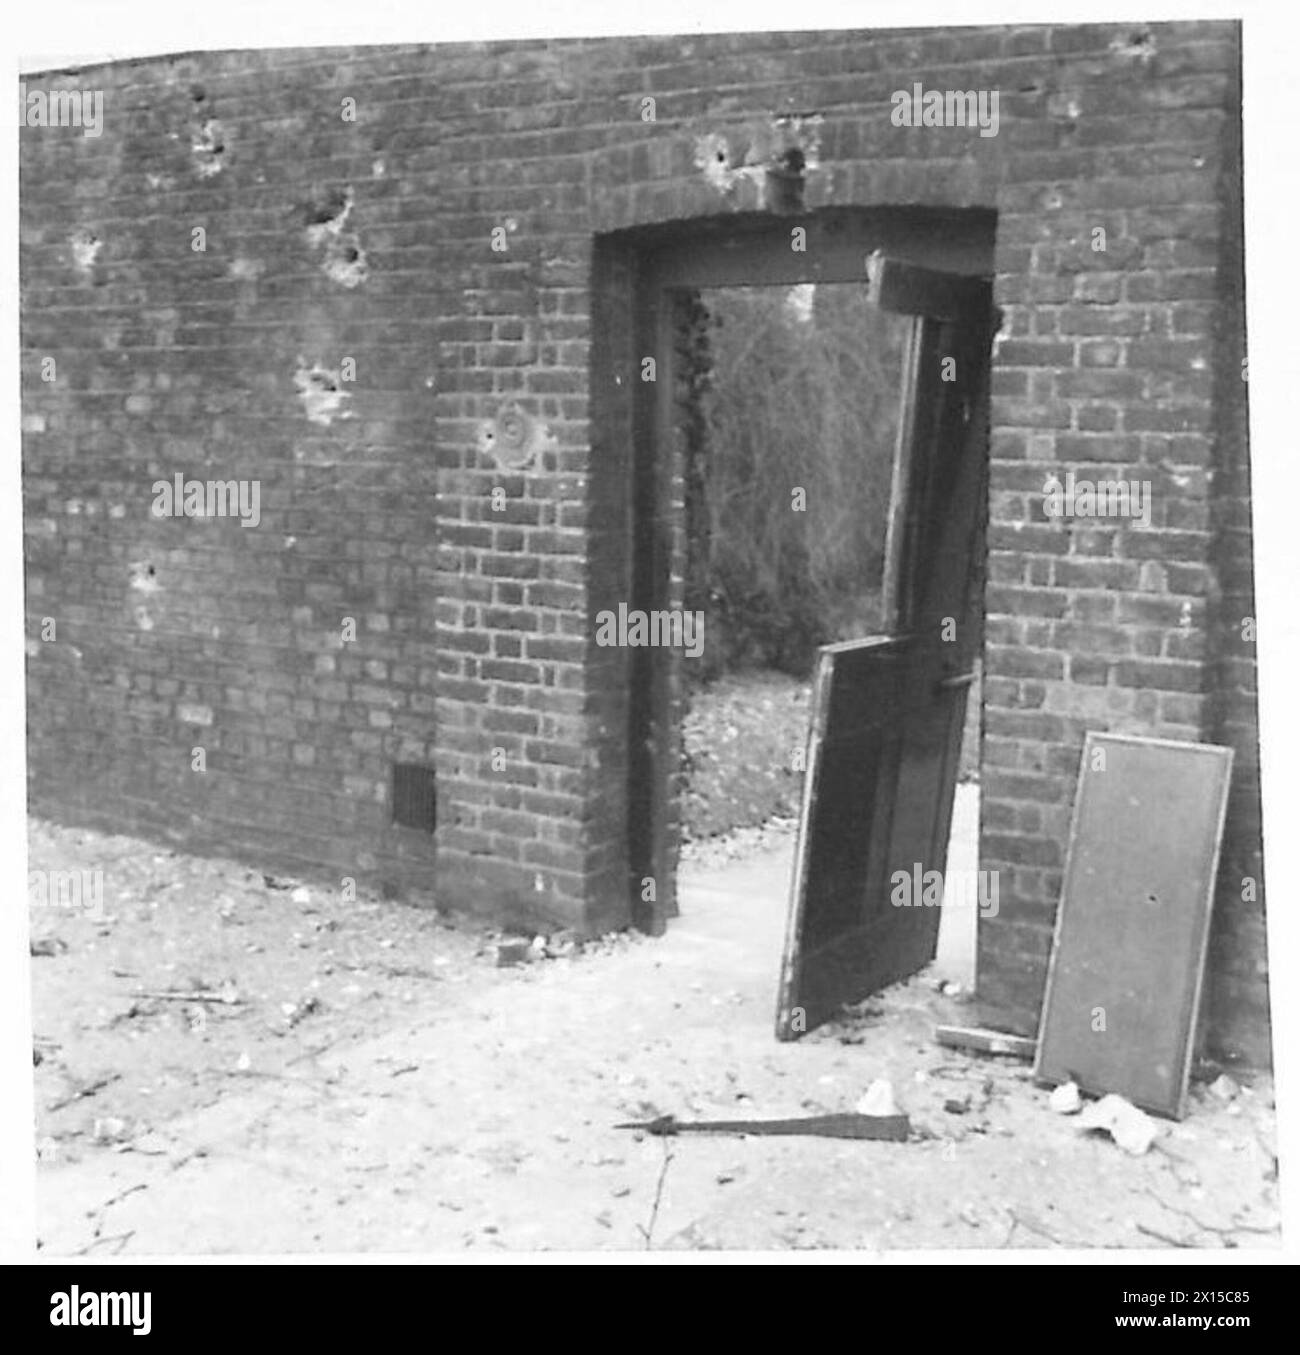 NO.10, DIE BEIM RAID BESCHÄDIGT WURDE - Bombenexplosion war verantwortlich für diese beschädigte Tür, die vom Garten von No.10 zur britischen Horse Guards führte Stockfoto